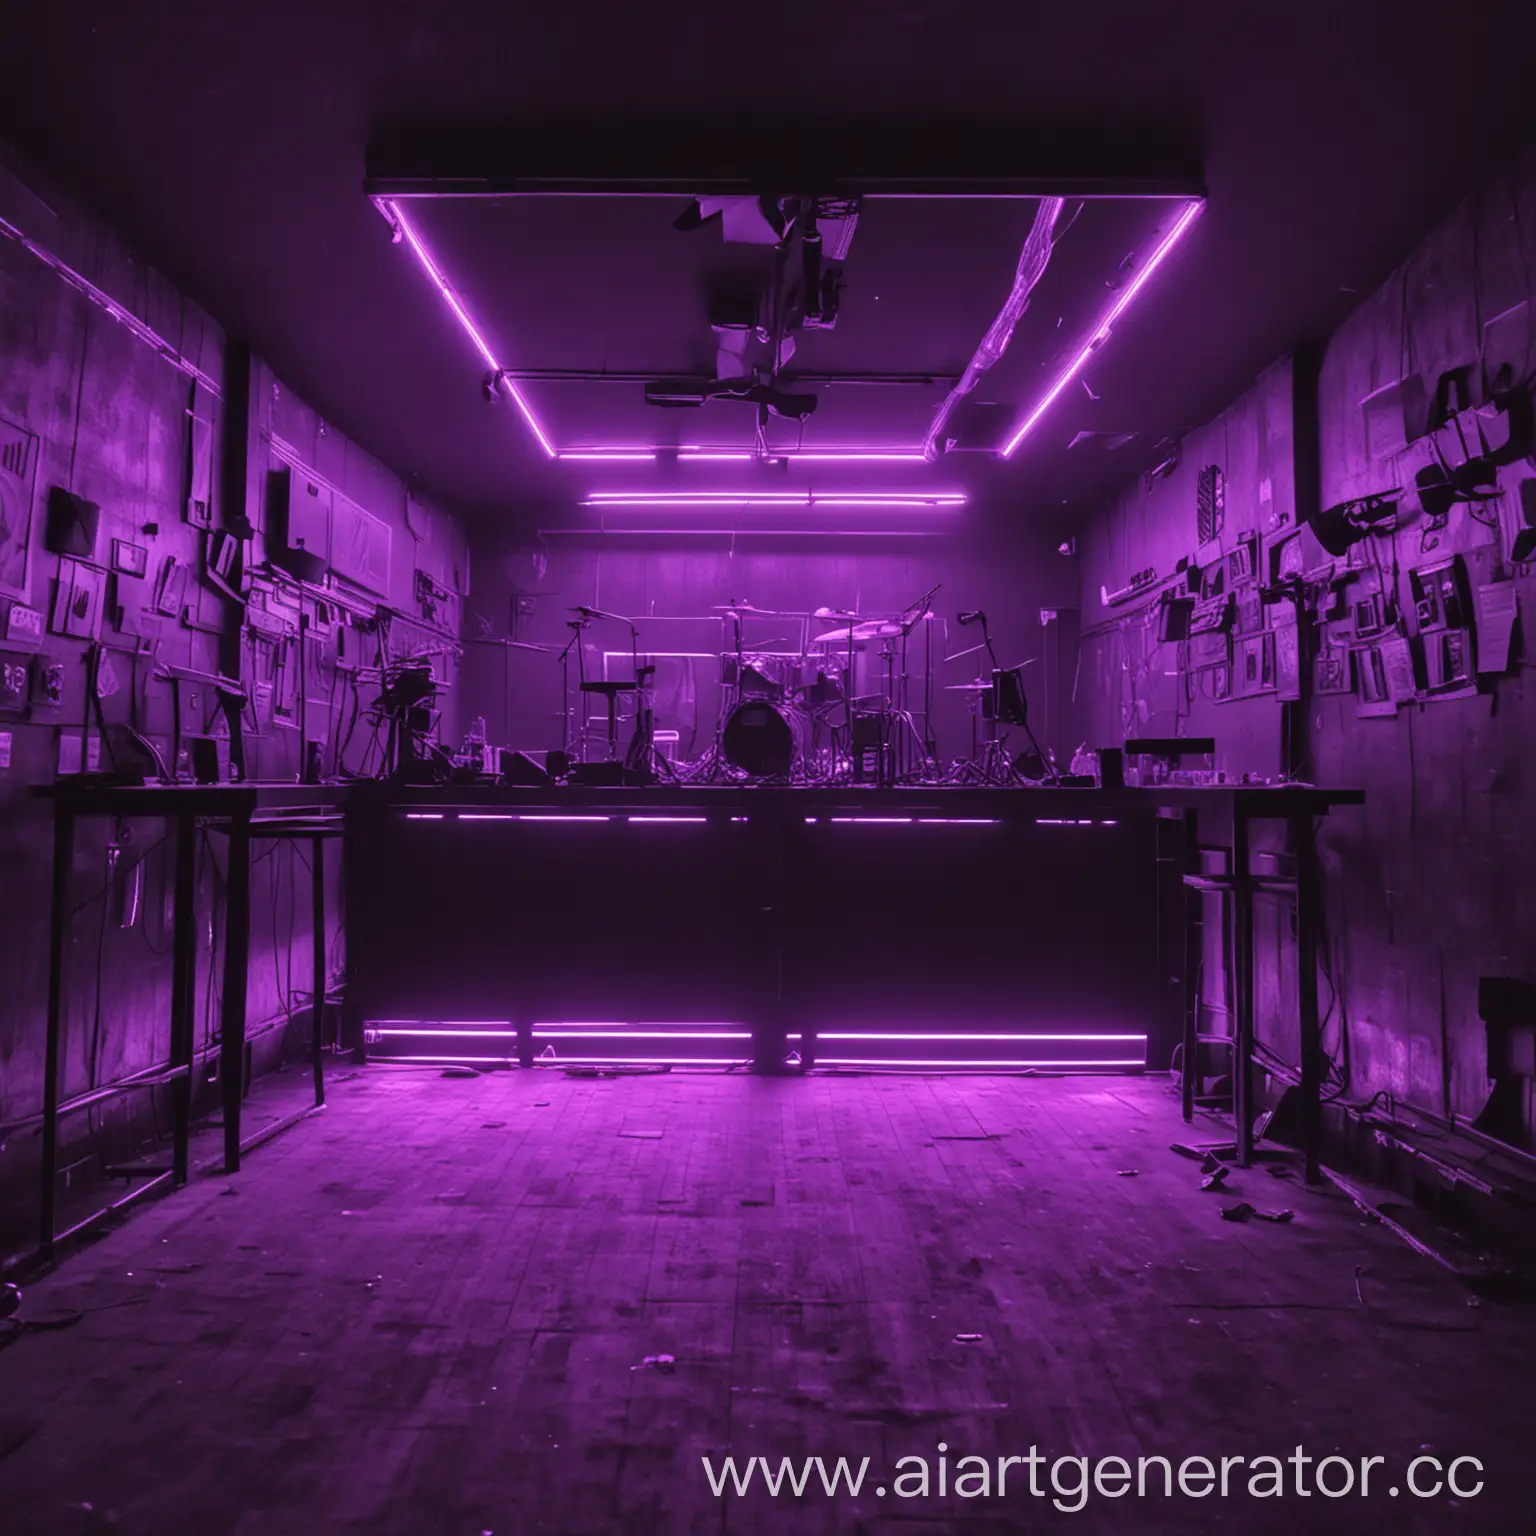 Cyberpunk-Club-with-Vibrant-Purple-Lighting